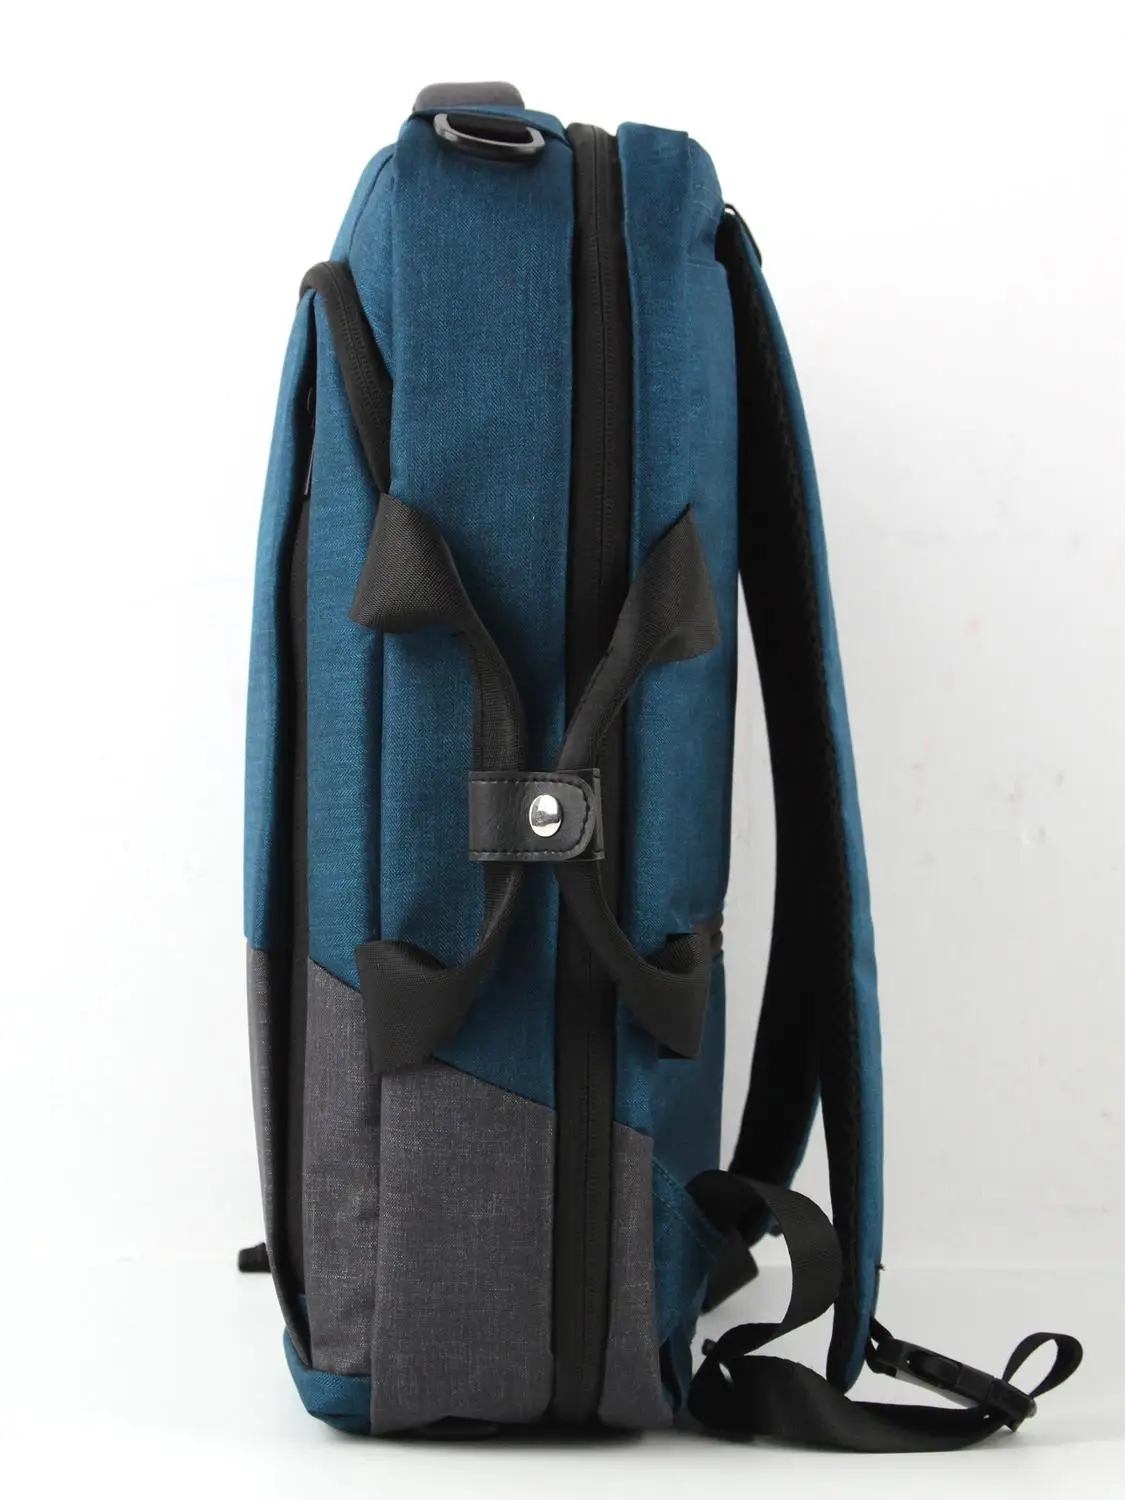 Повседневный деловой мужской рюкзак для компьютера, легкая сумка для ноутбука 19 л, Женский дорожный рюкзак с защитой от кражи 2020, темно-серы... от AliExpress RU&CIS NEW